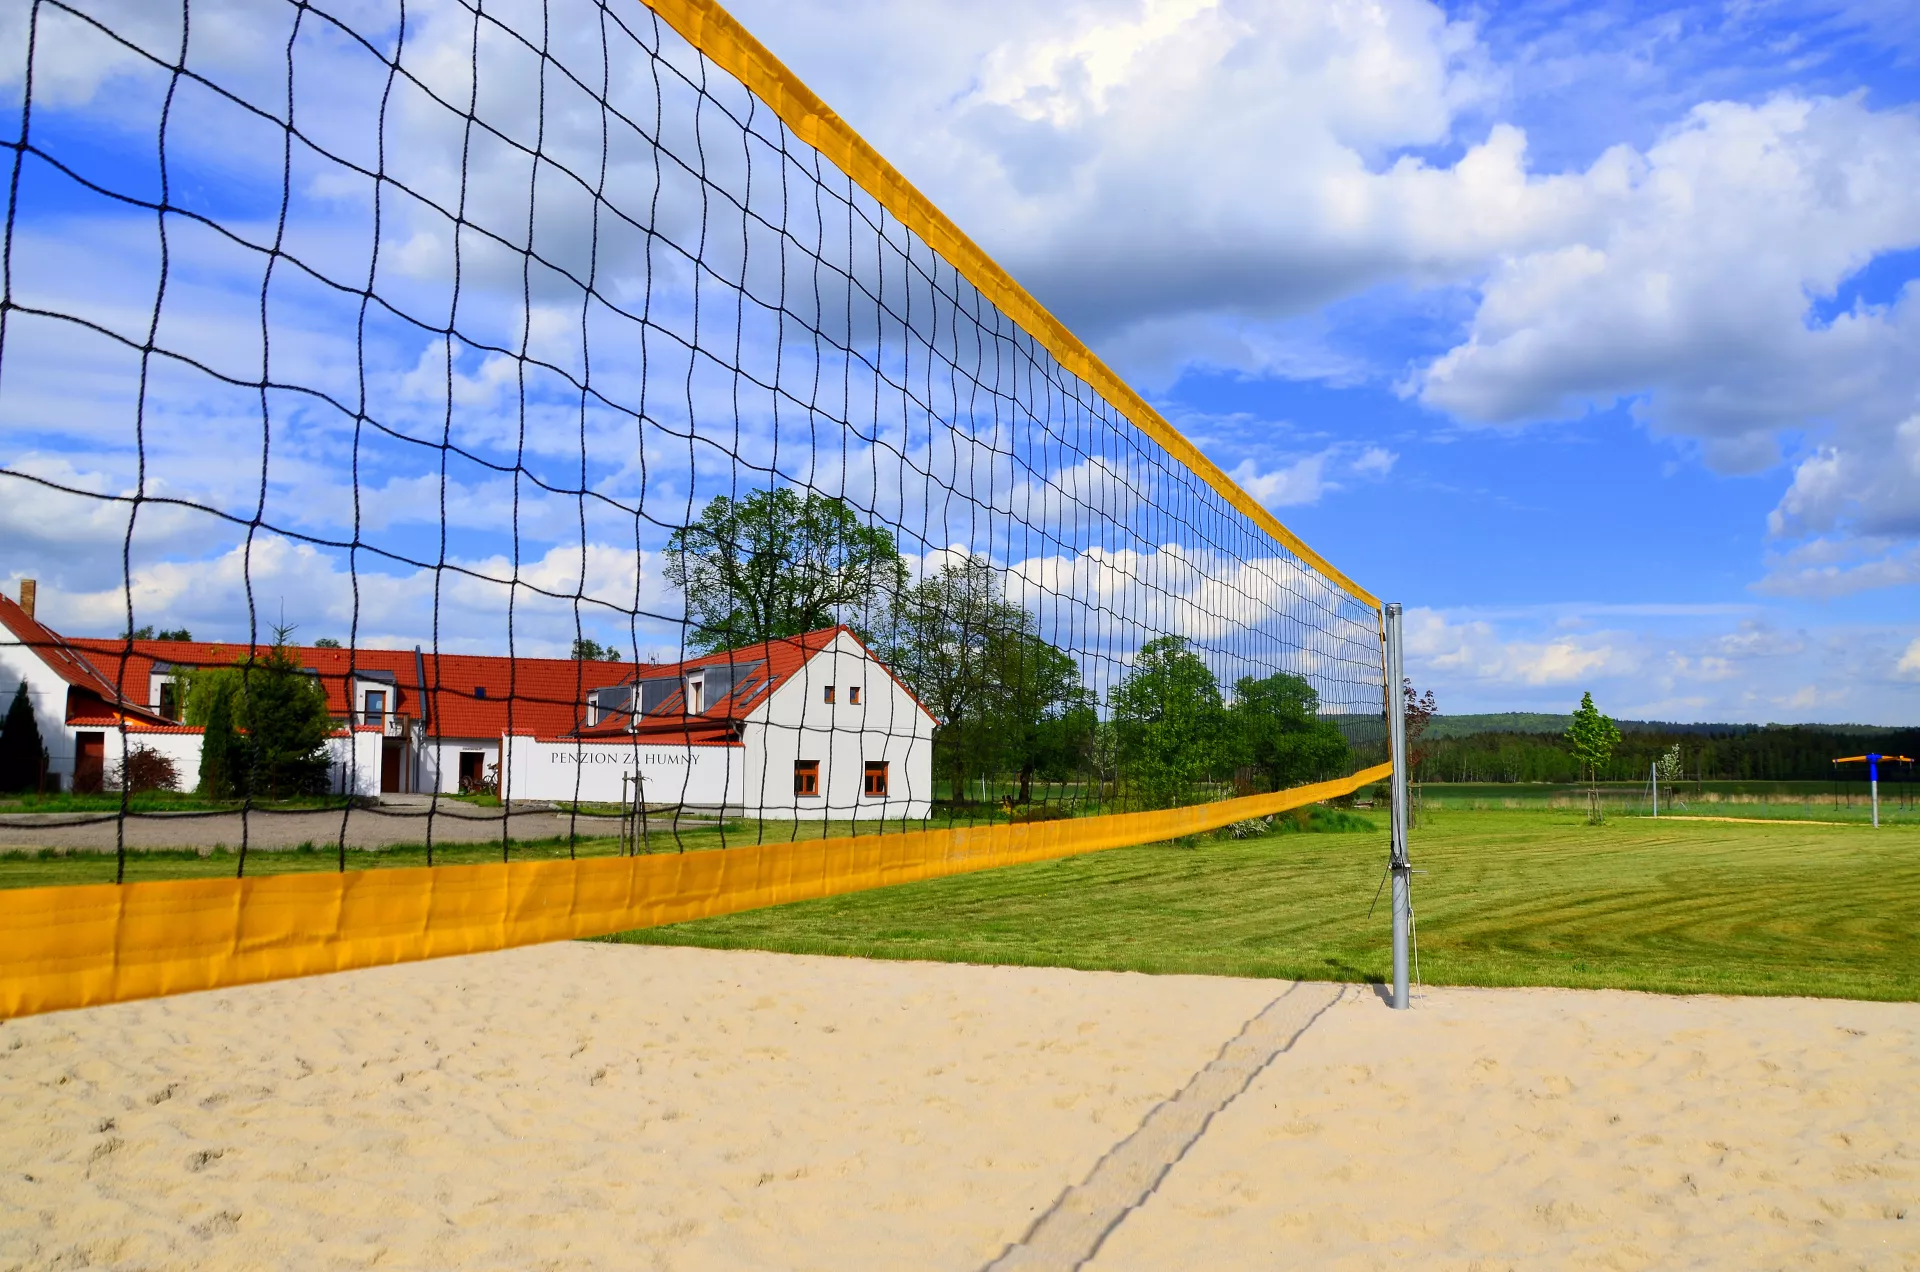 Obrázek beach volleyballového hřiště. Odkaz na stránku služeb a aktivit.